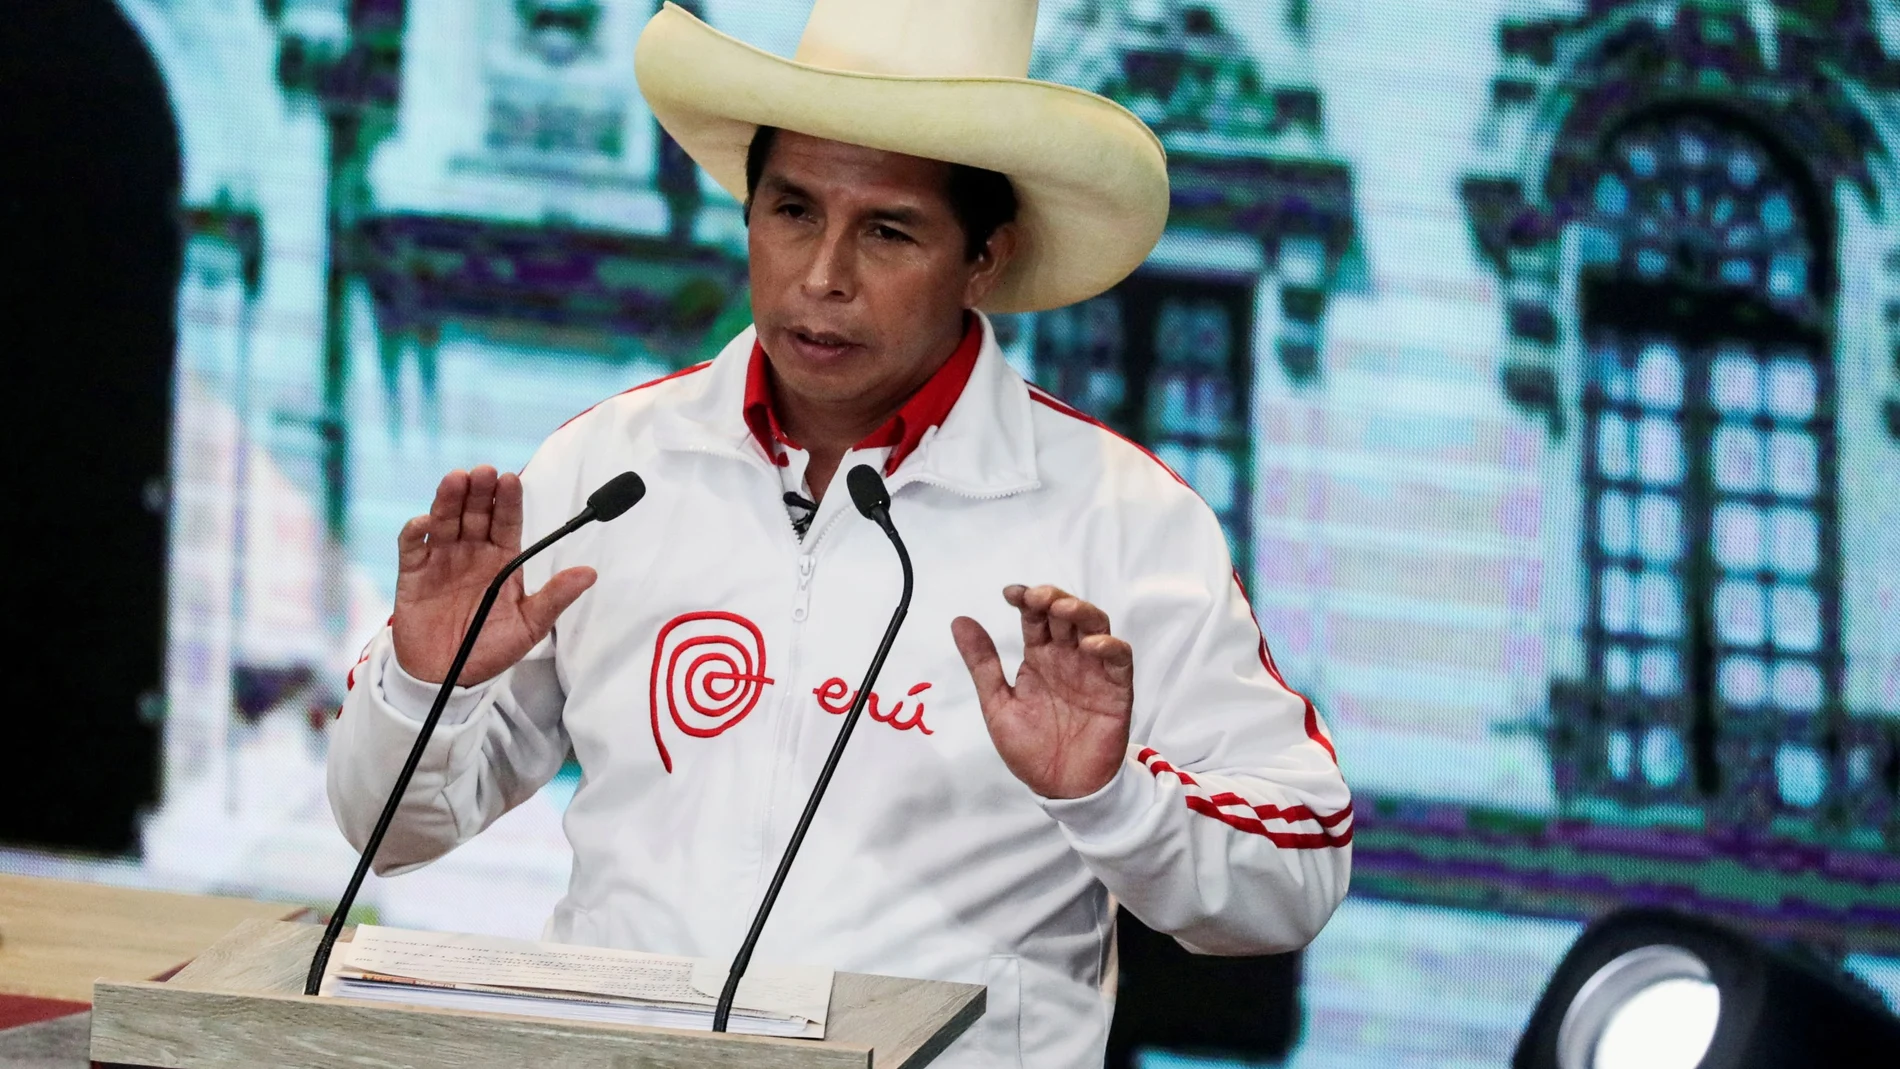 El presidente Castillo ha reaccionado poco después pidiendo al Congreso que deje a un lado esa “confrontación inútil”